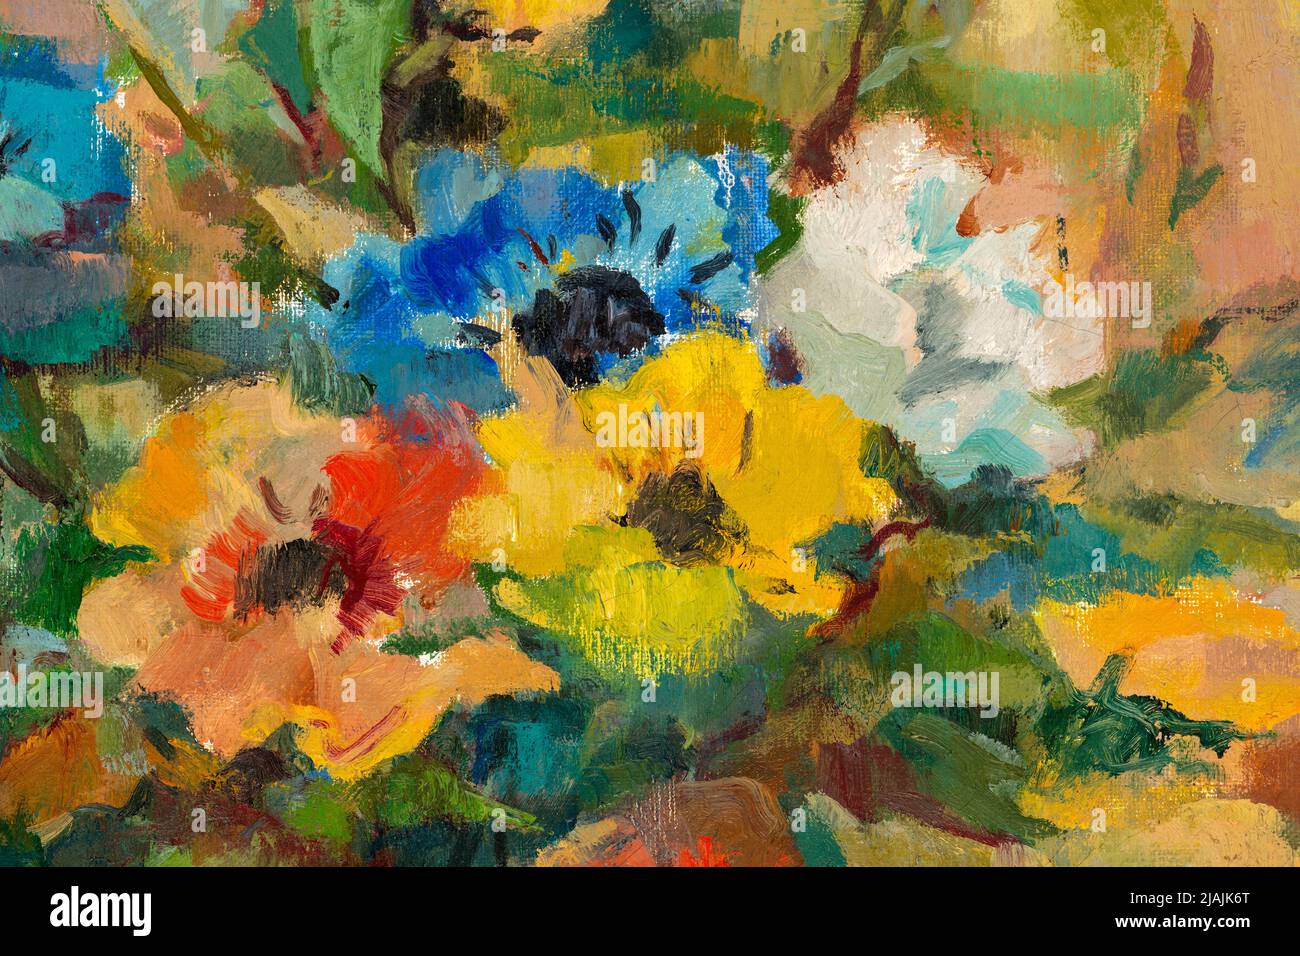 Nahaufnahme eines Ölgemäldes im impressionistischen Stil, das einen Strauß pastellfarbener Blumen darstellt. Stockfoto